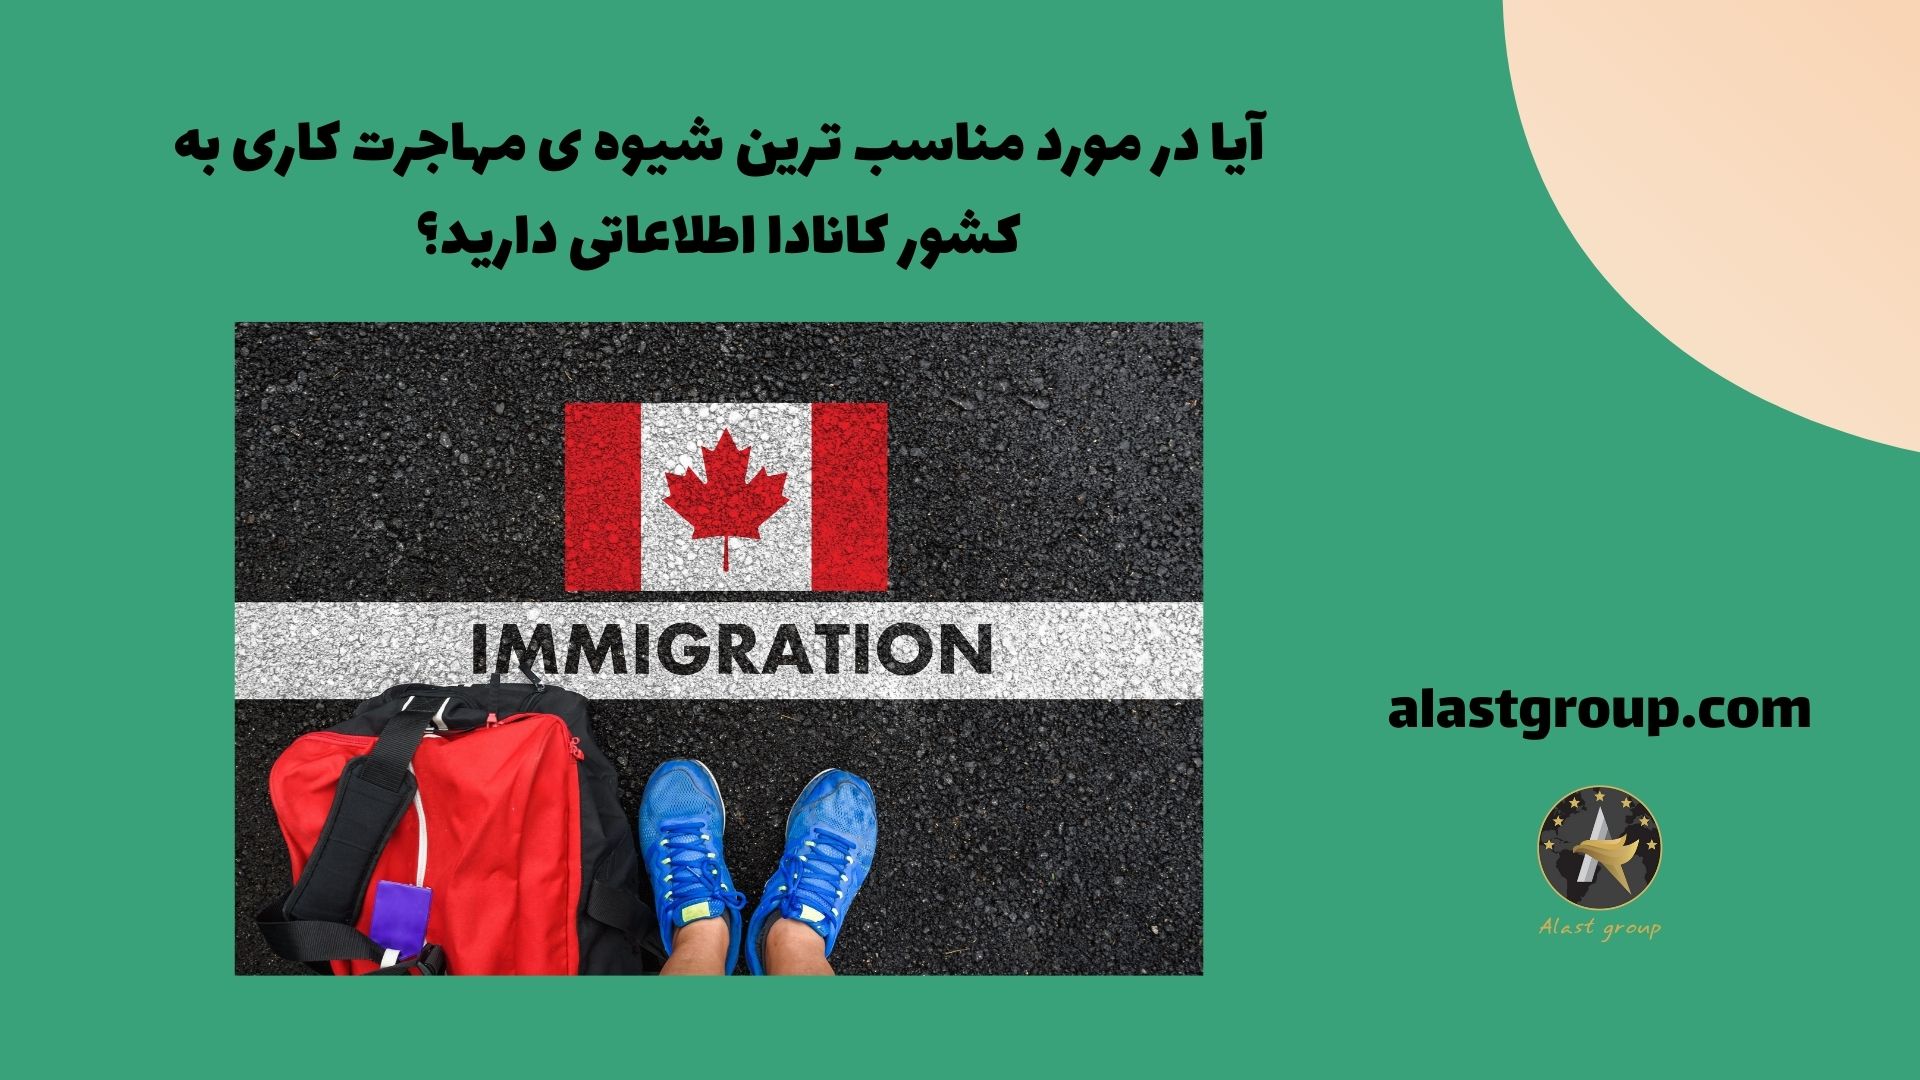 آیا در مورد مناسب ترین شیوه ی مهاجرت کاری به کشور کانادا اطلاعاتی دارید؟